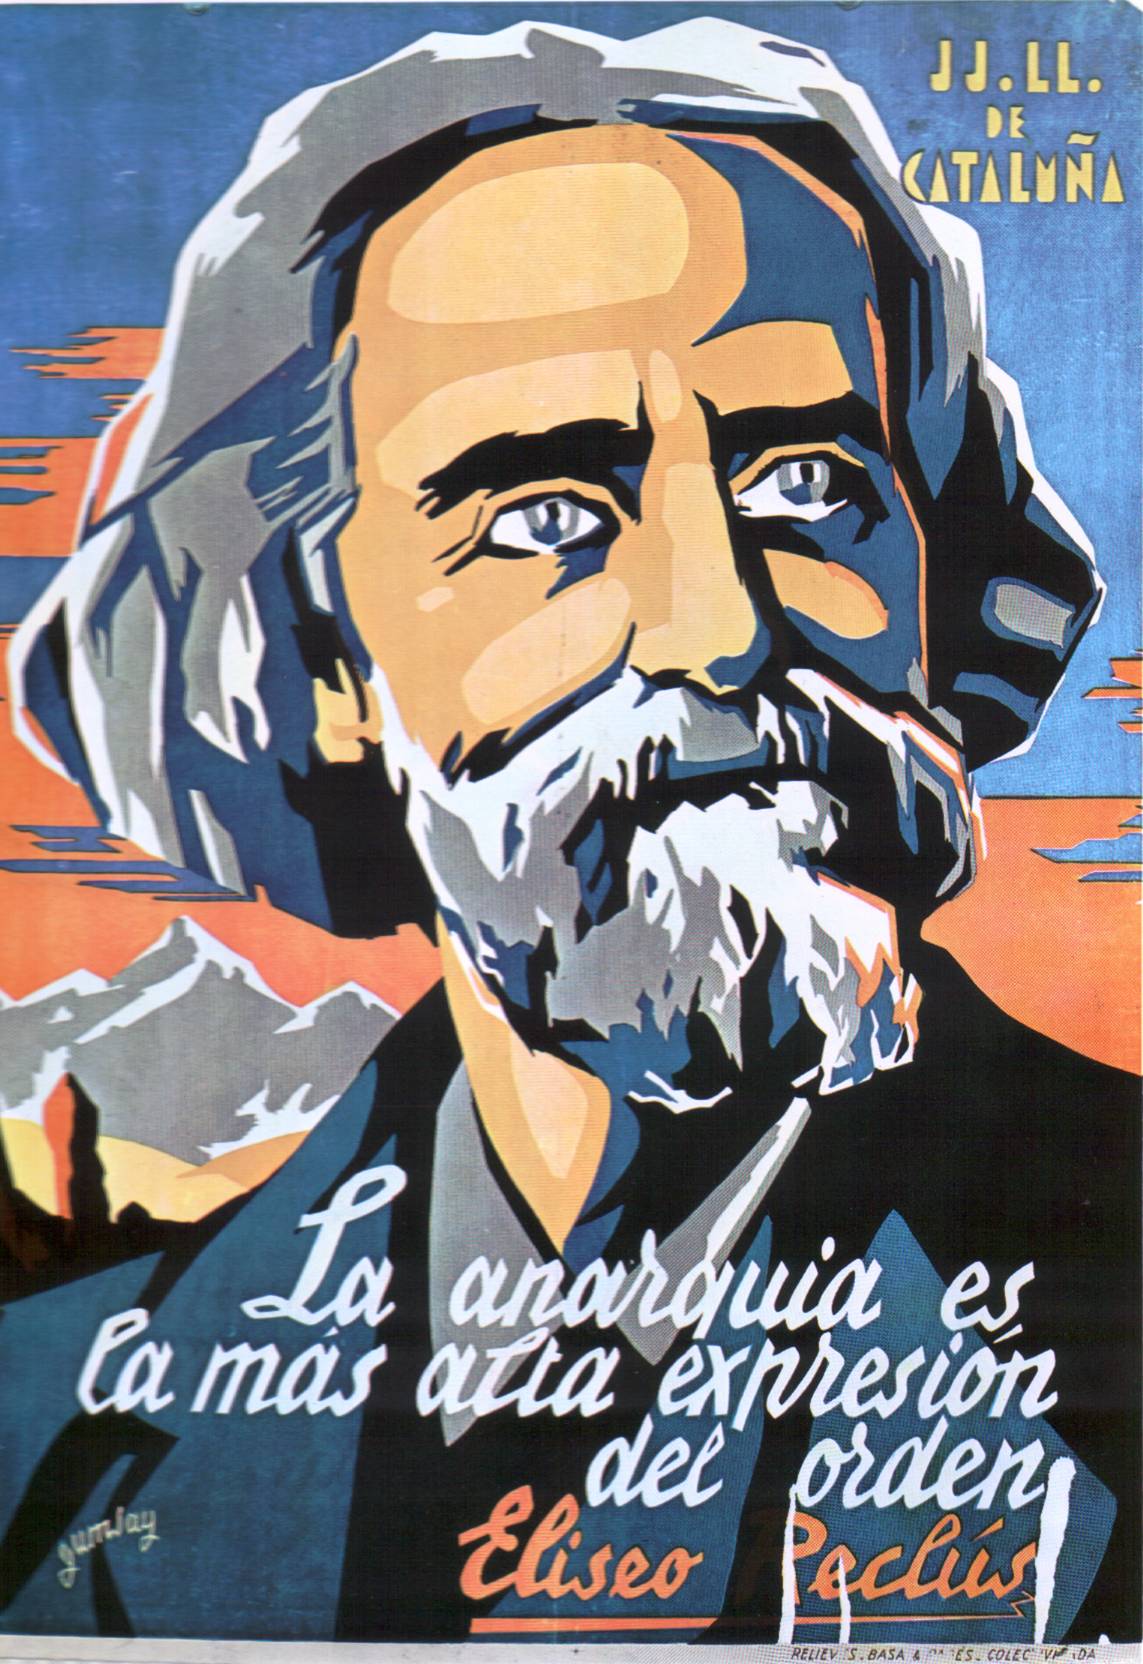 Poster comemorativo para os jovens libertários (DD LL) da Catalunha, de 1937. "A anarquia é a mais alta expressão da ordem".